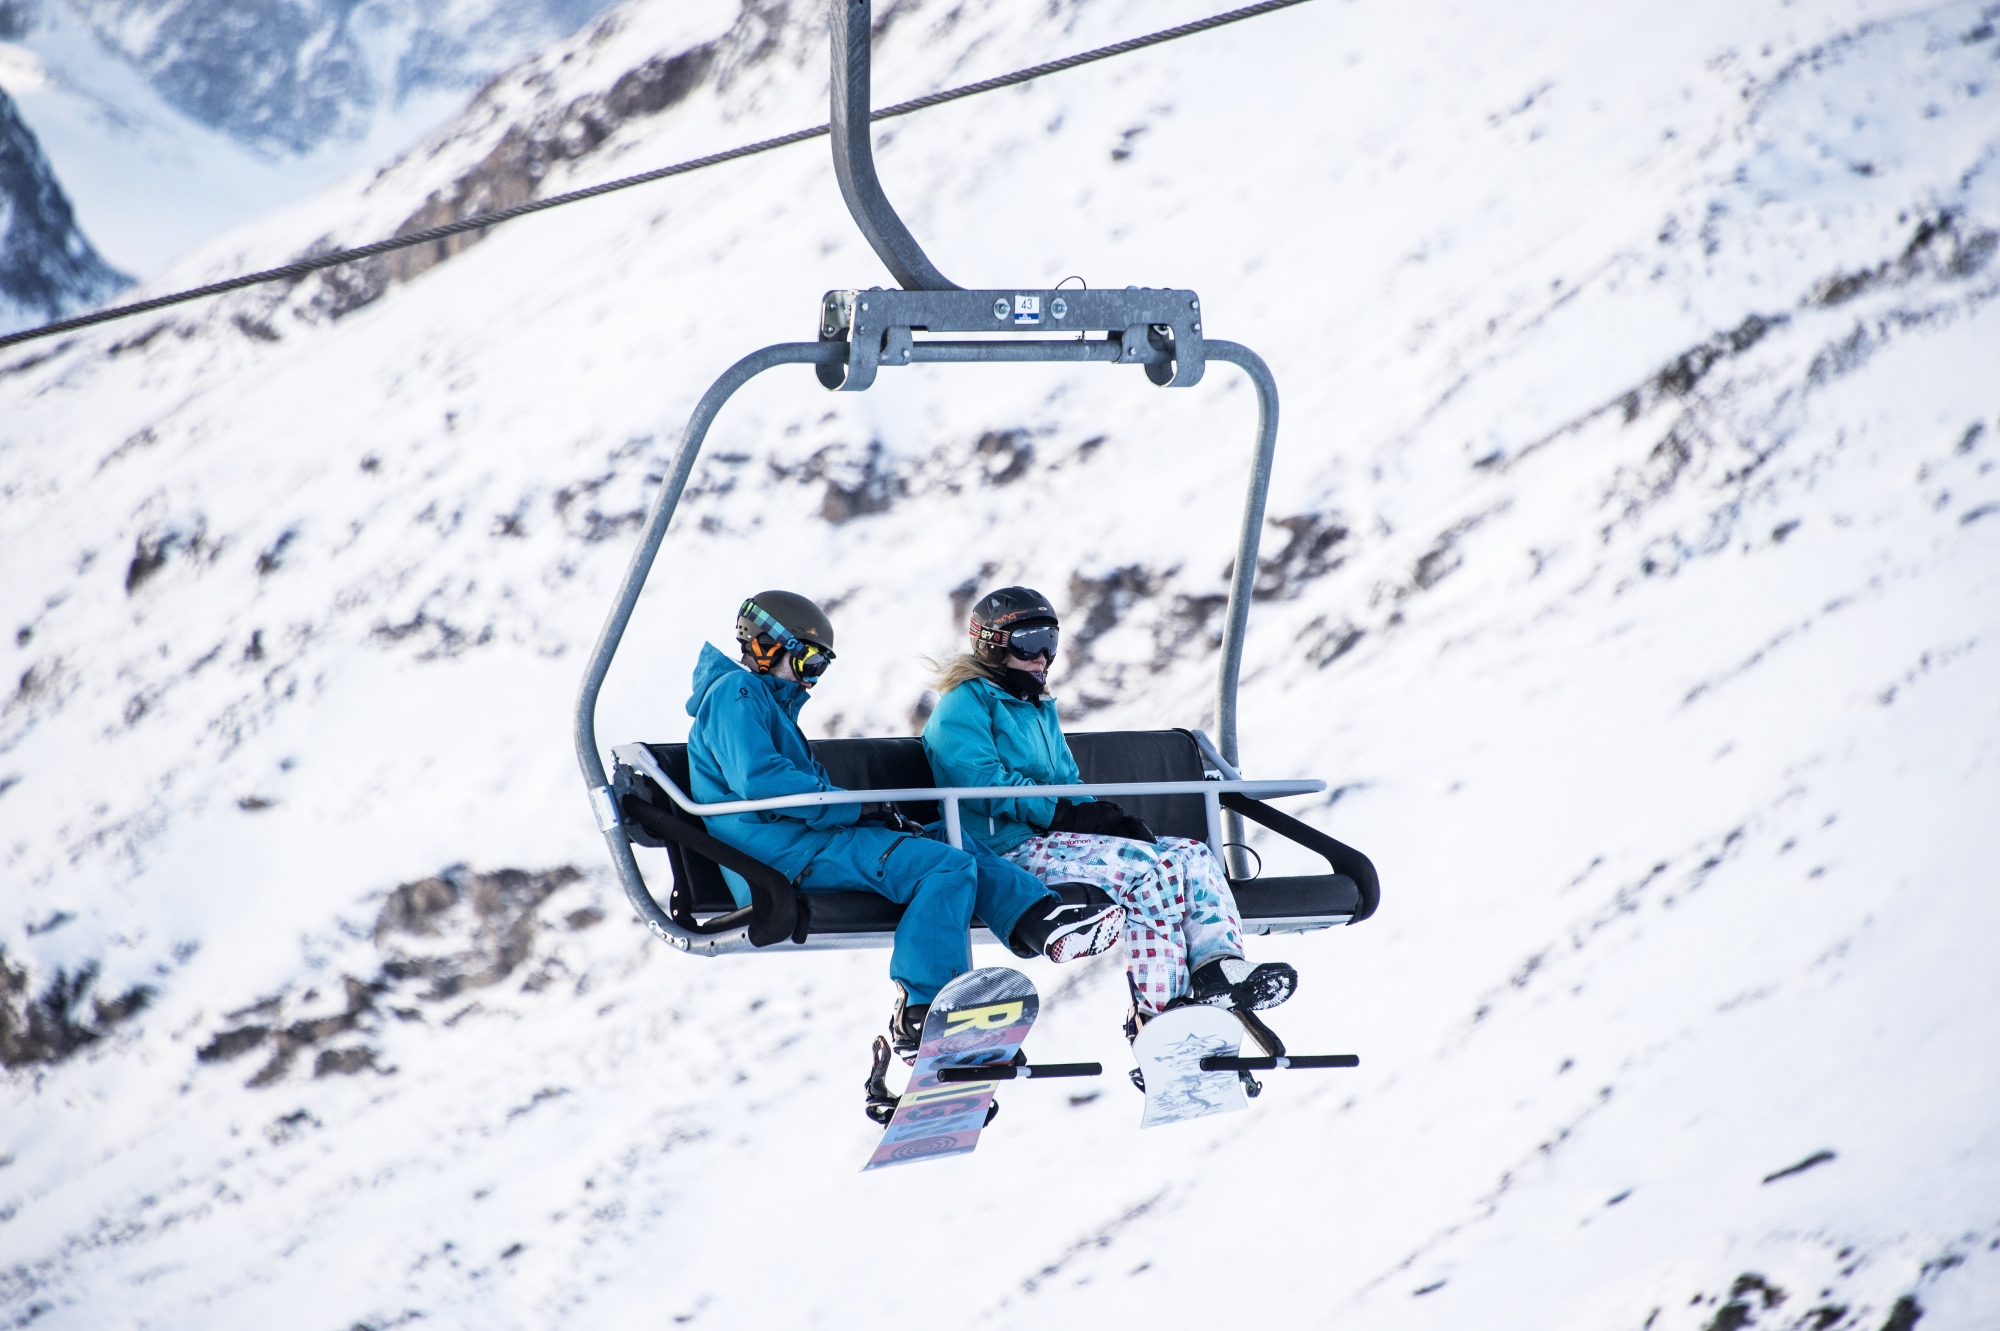 En 2018-2019, les Remontées mécaniques d’Anniviers ont enregistré 726 000 journées-skieurs.